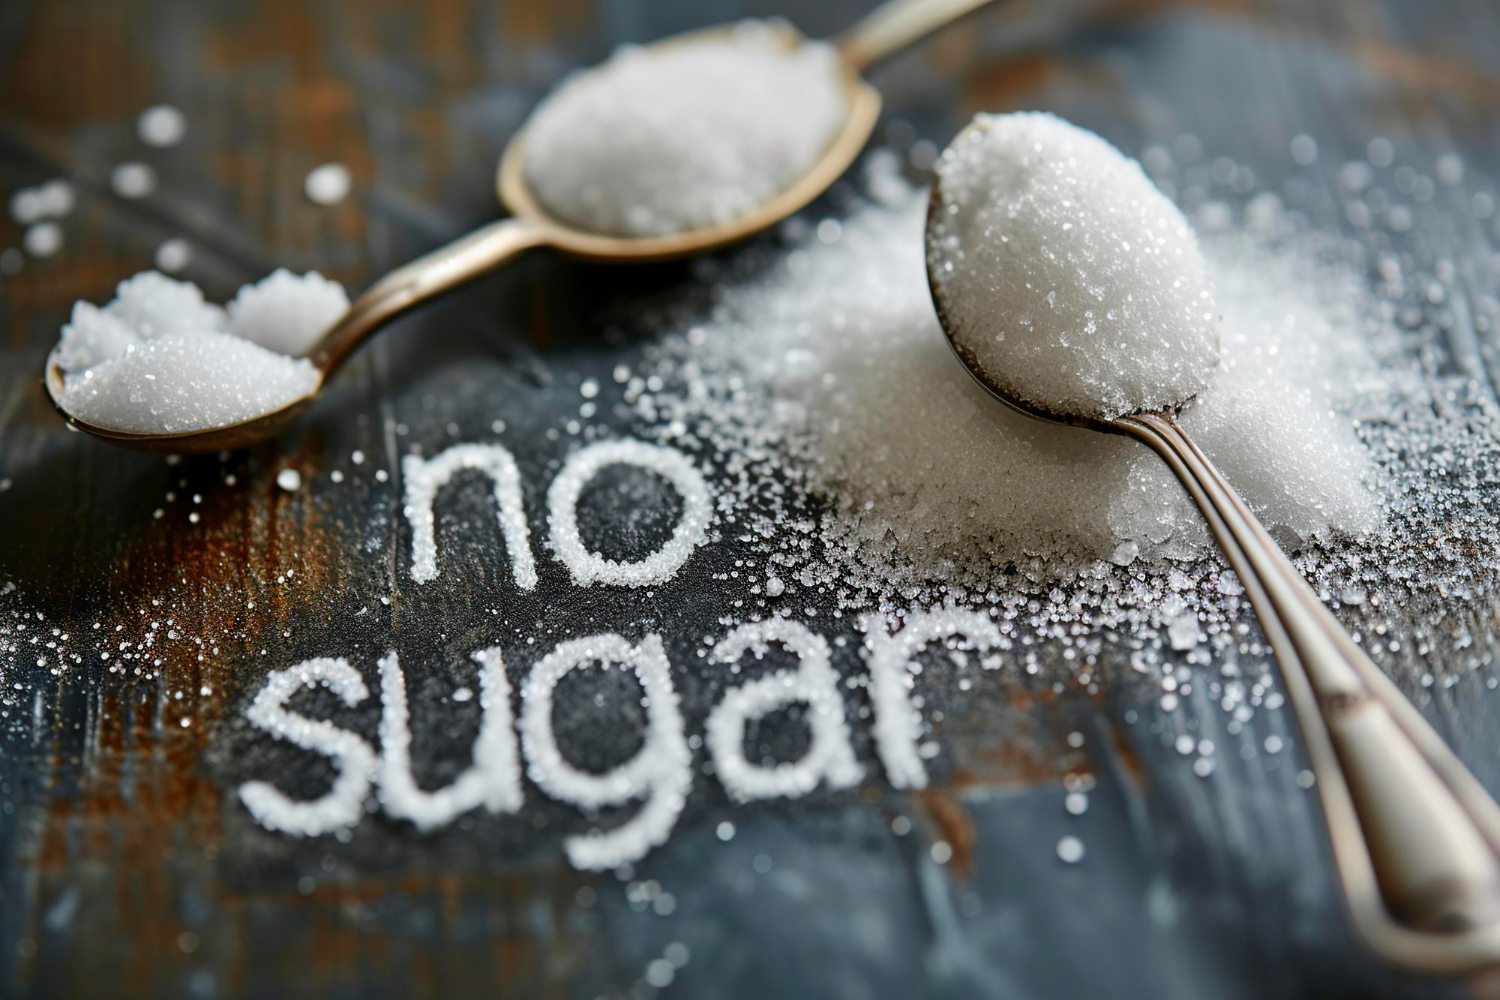 Sztuczne słodziki i zamienniki cukru – fakty i mity. Czy naprawdę powodują one raka? SPRAWDZAMY!